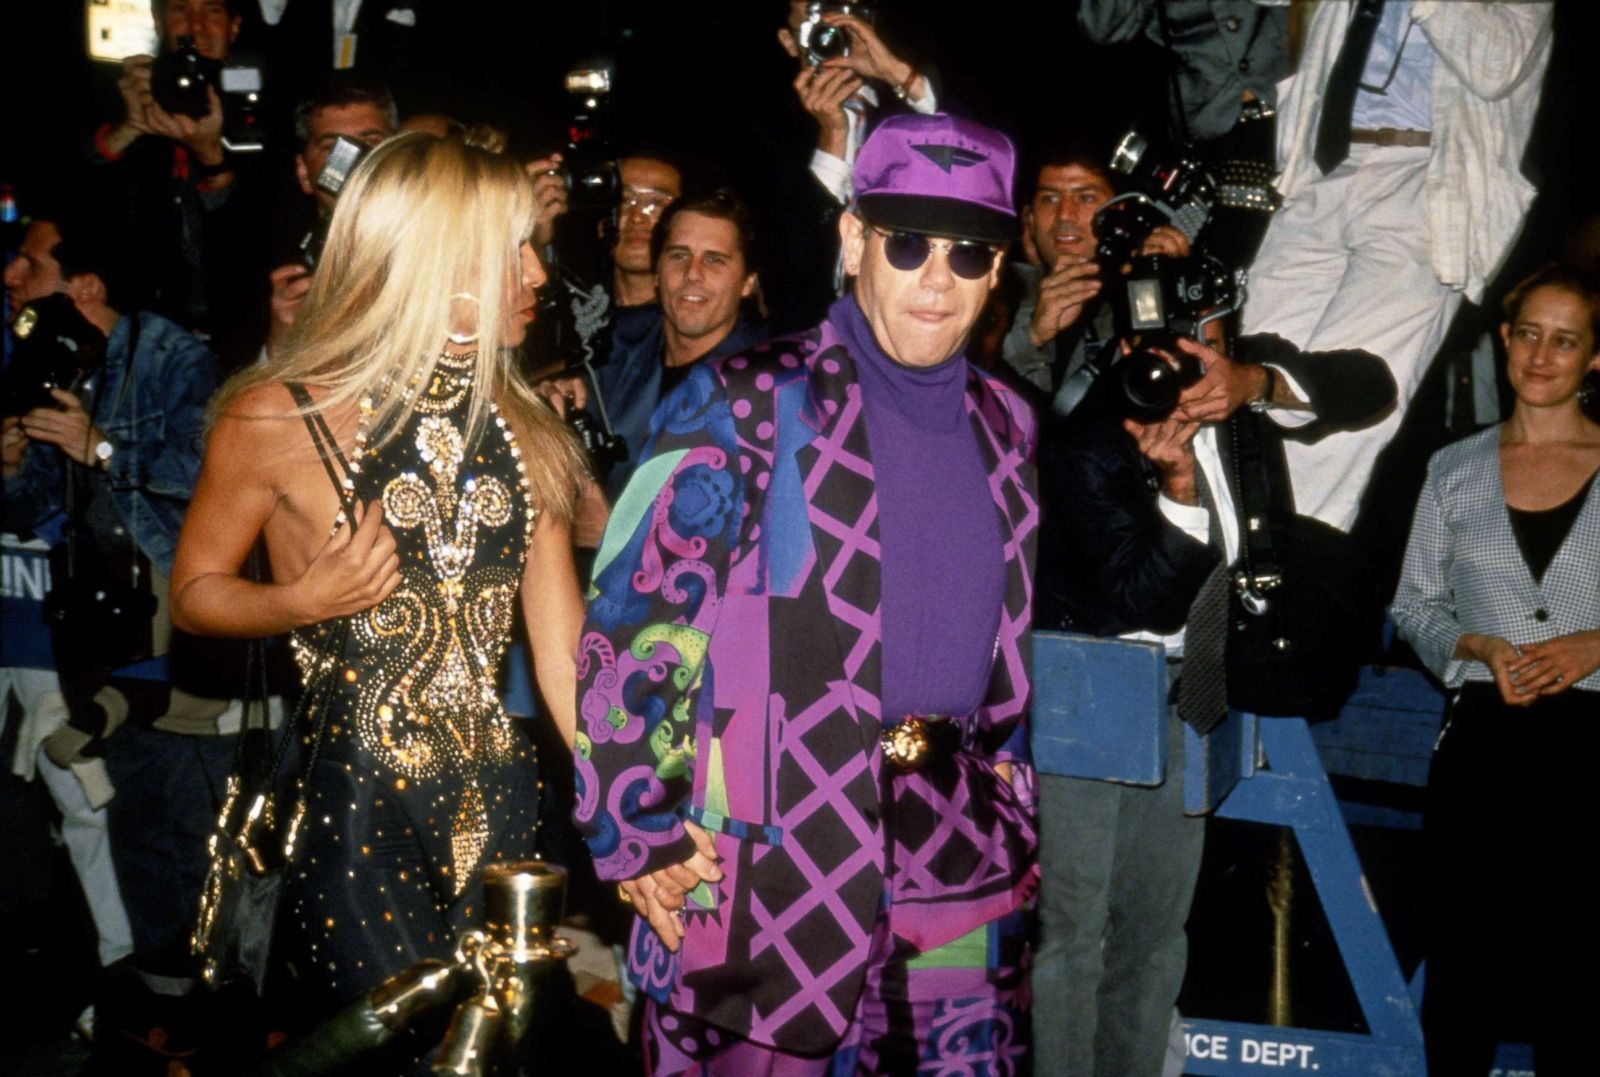 Photos: Elton John's Outfits Through the Years